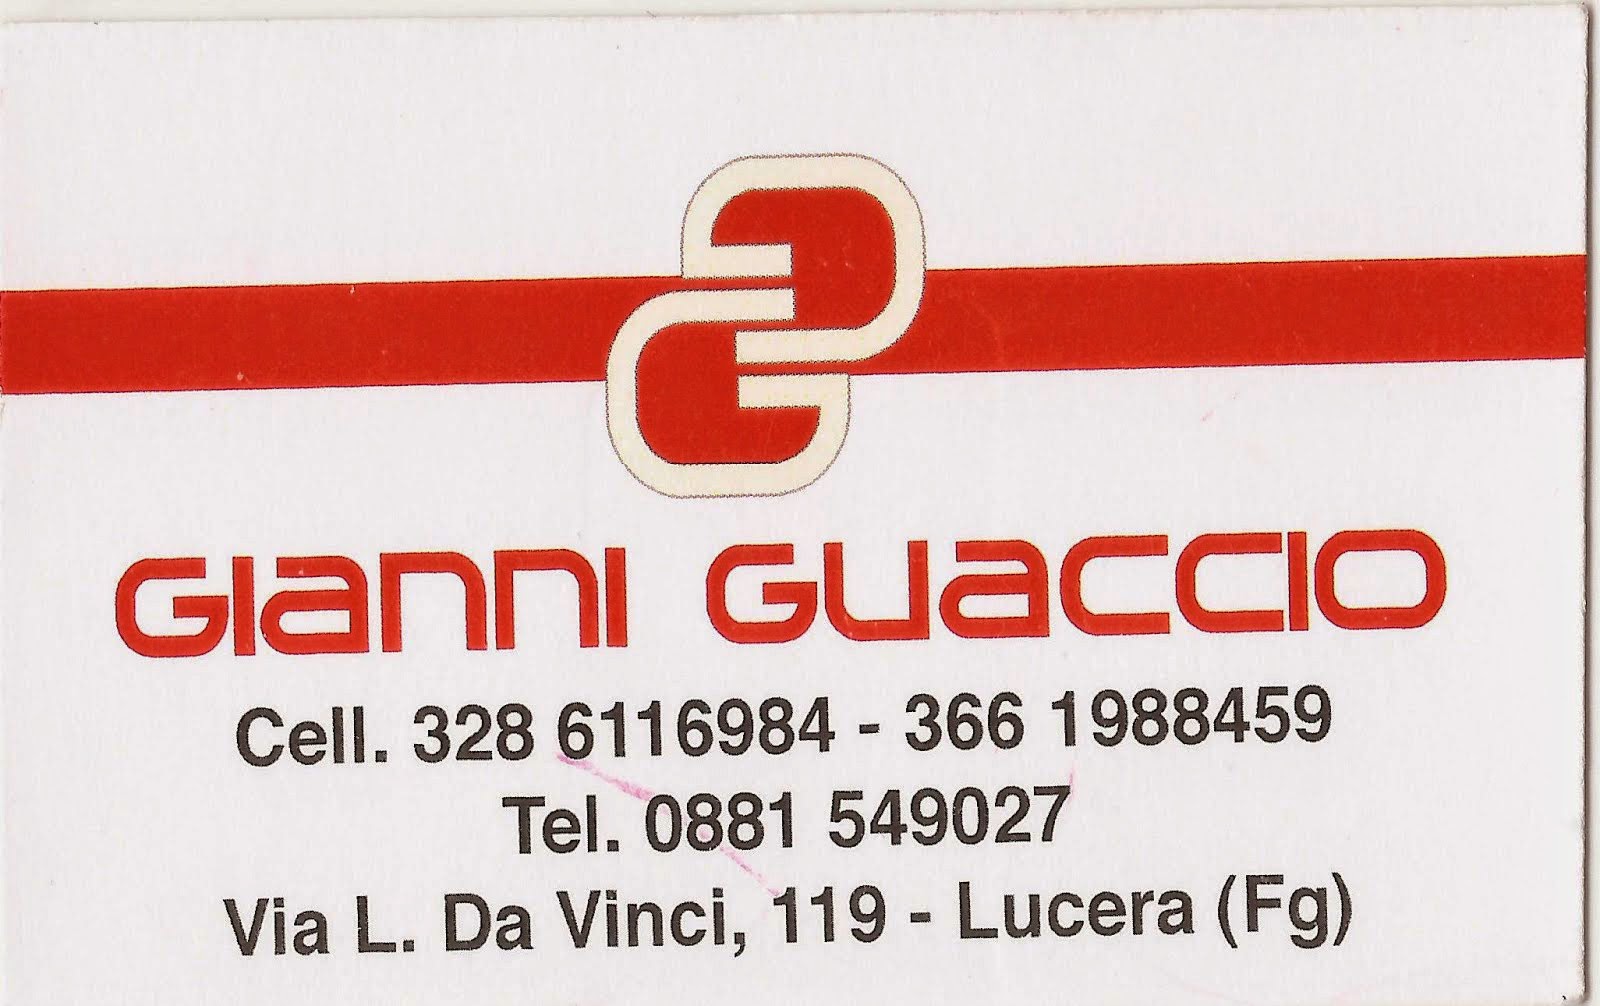 Gianni Guaccio